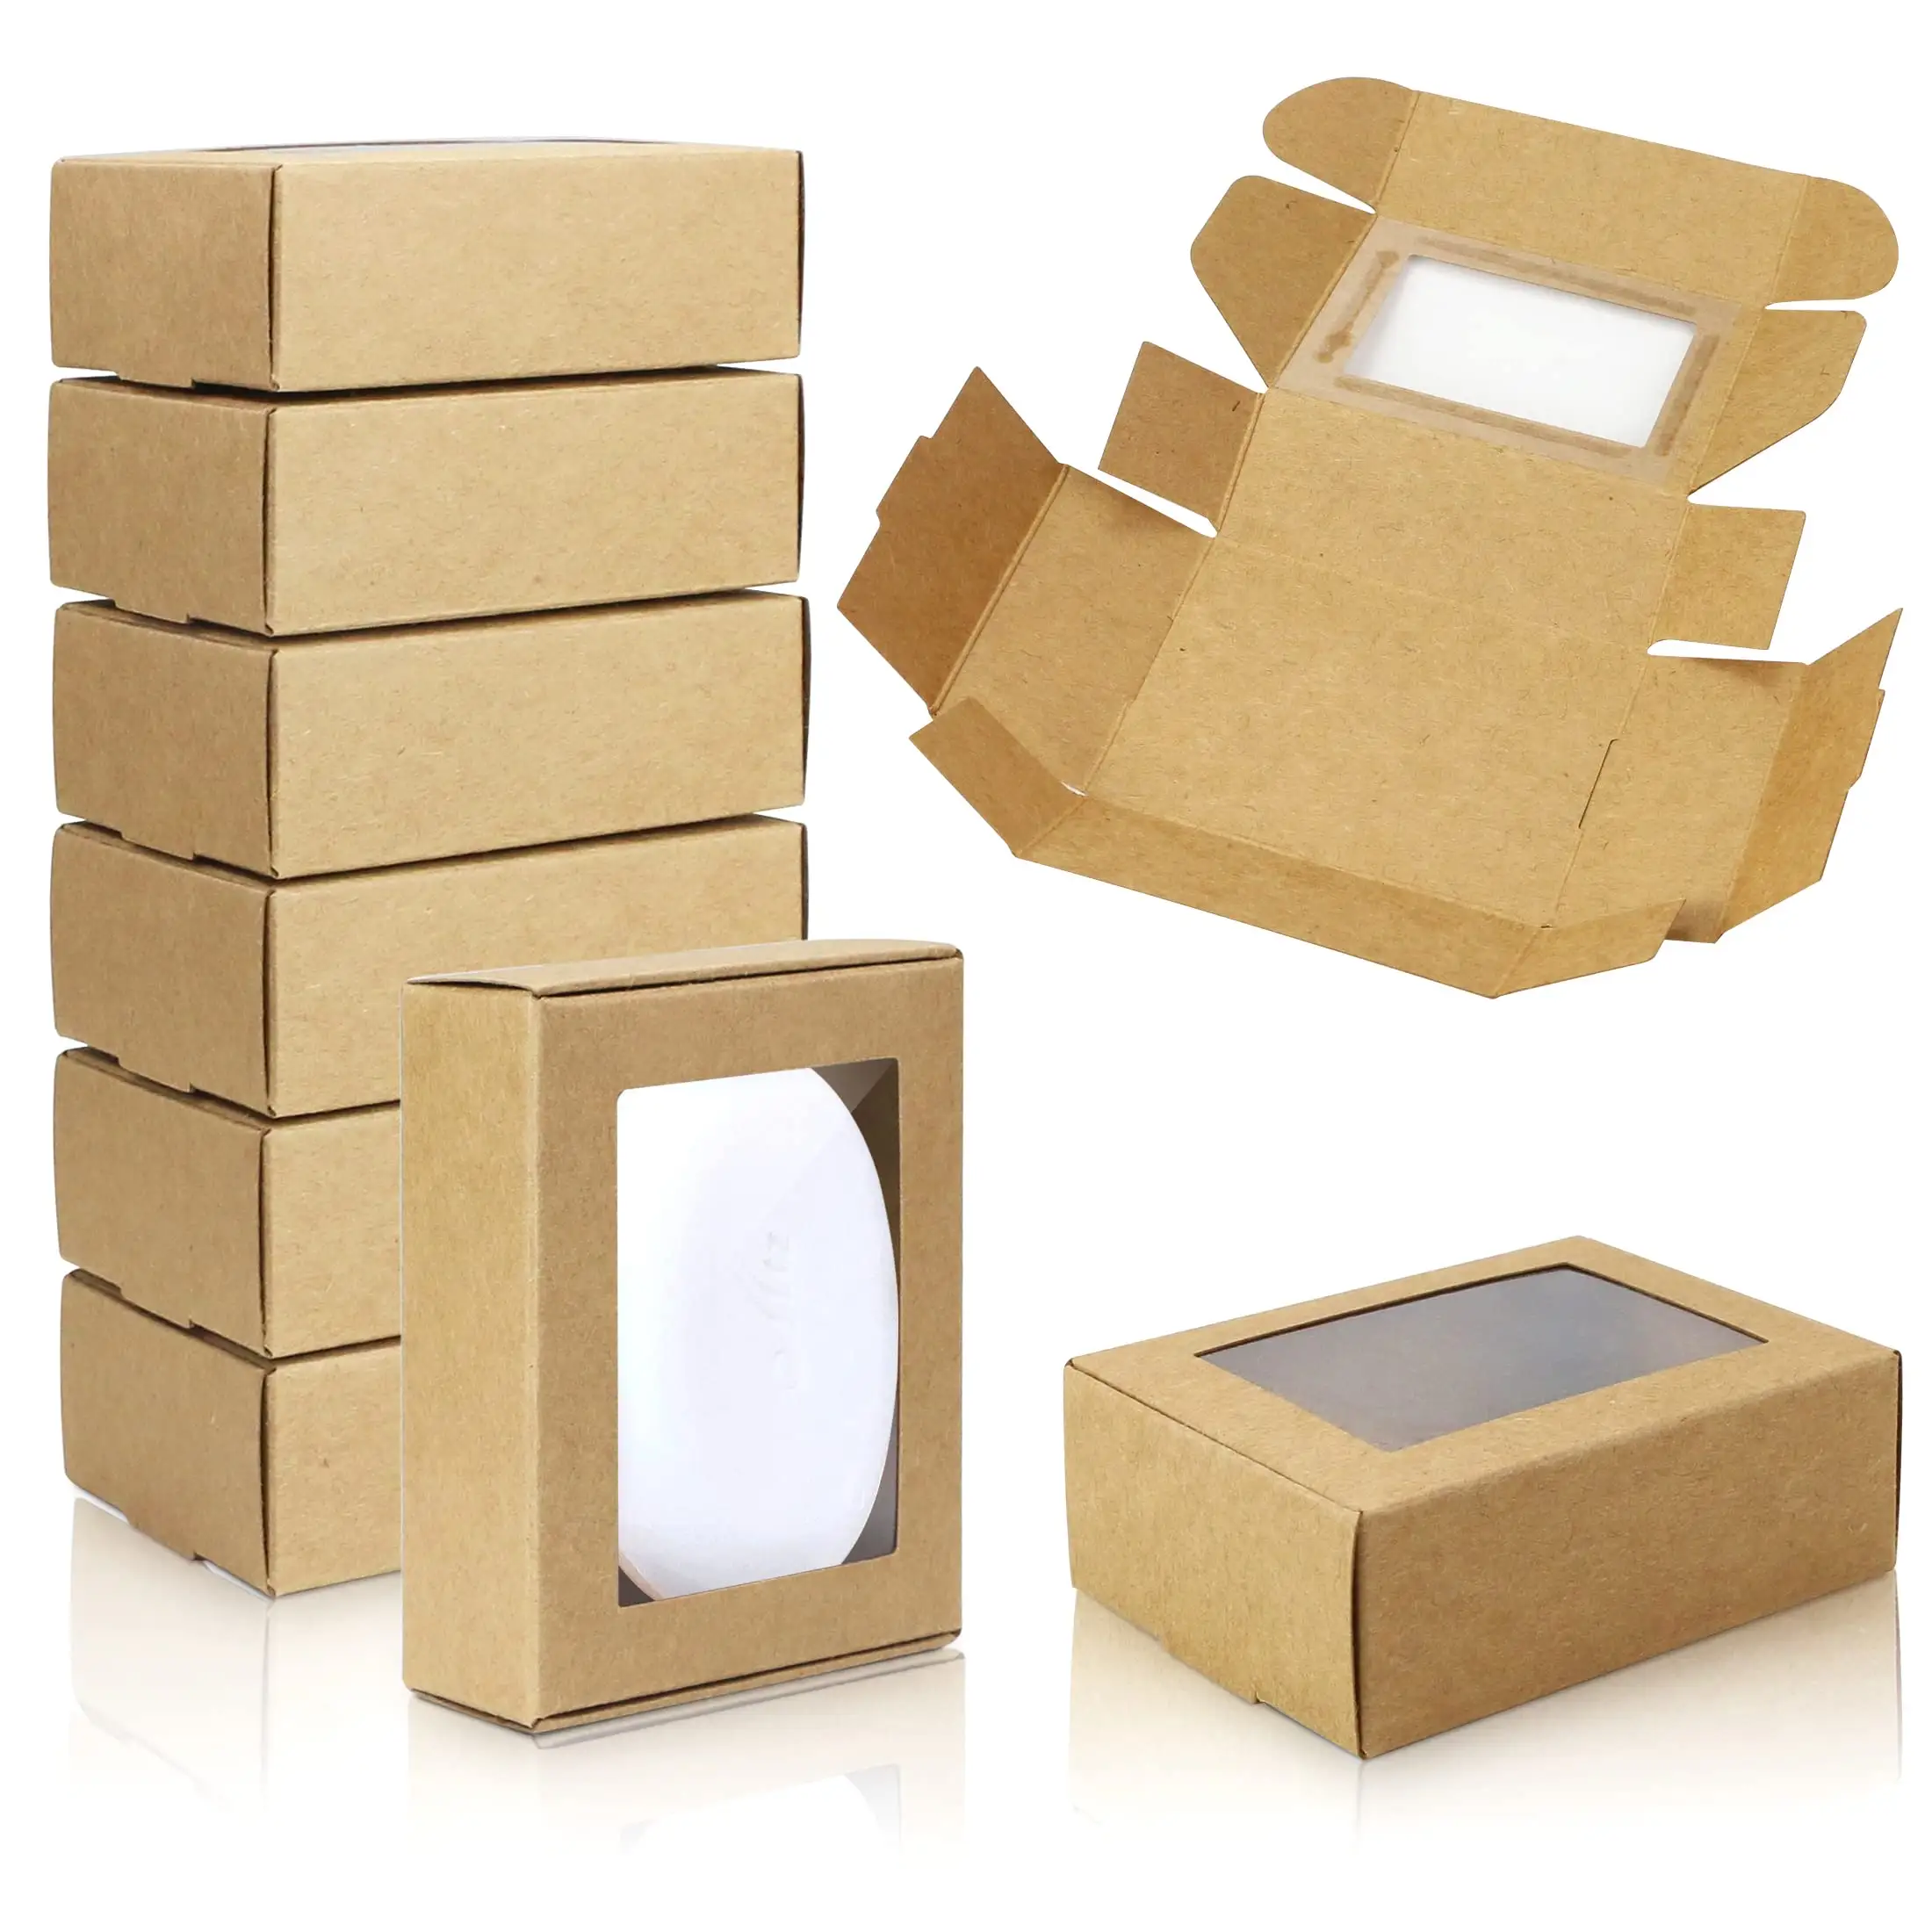 Kotak kertas khusus untuk hadiah anak-anak kotak hadiah kertas tisu dengan tutup bening